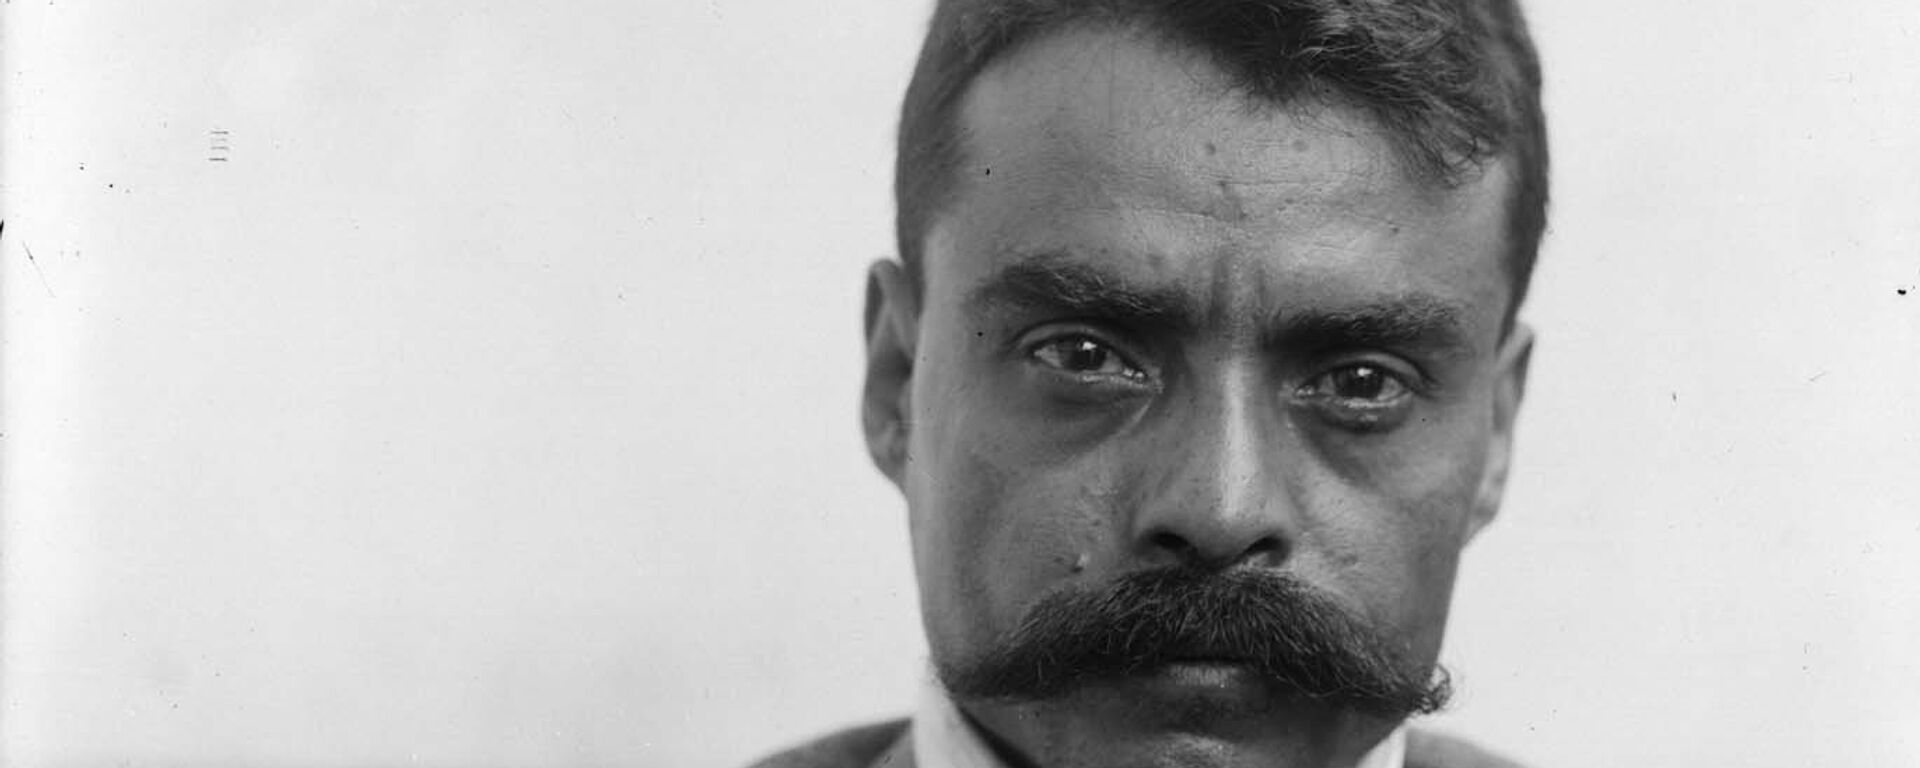 El líder revolucionario mexicano Emiliano Zapata en 1914 - Sputnik Mundo, 1920, 30.04.2021